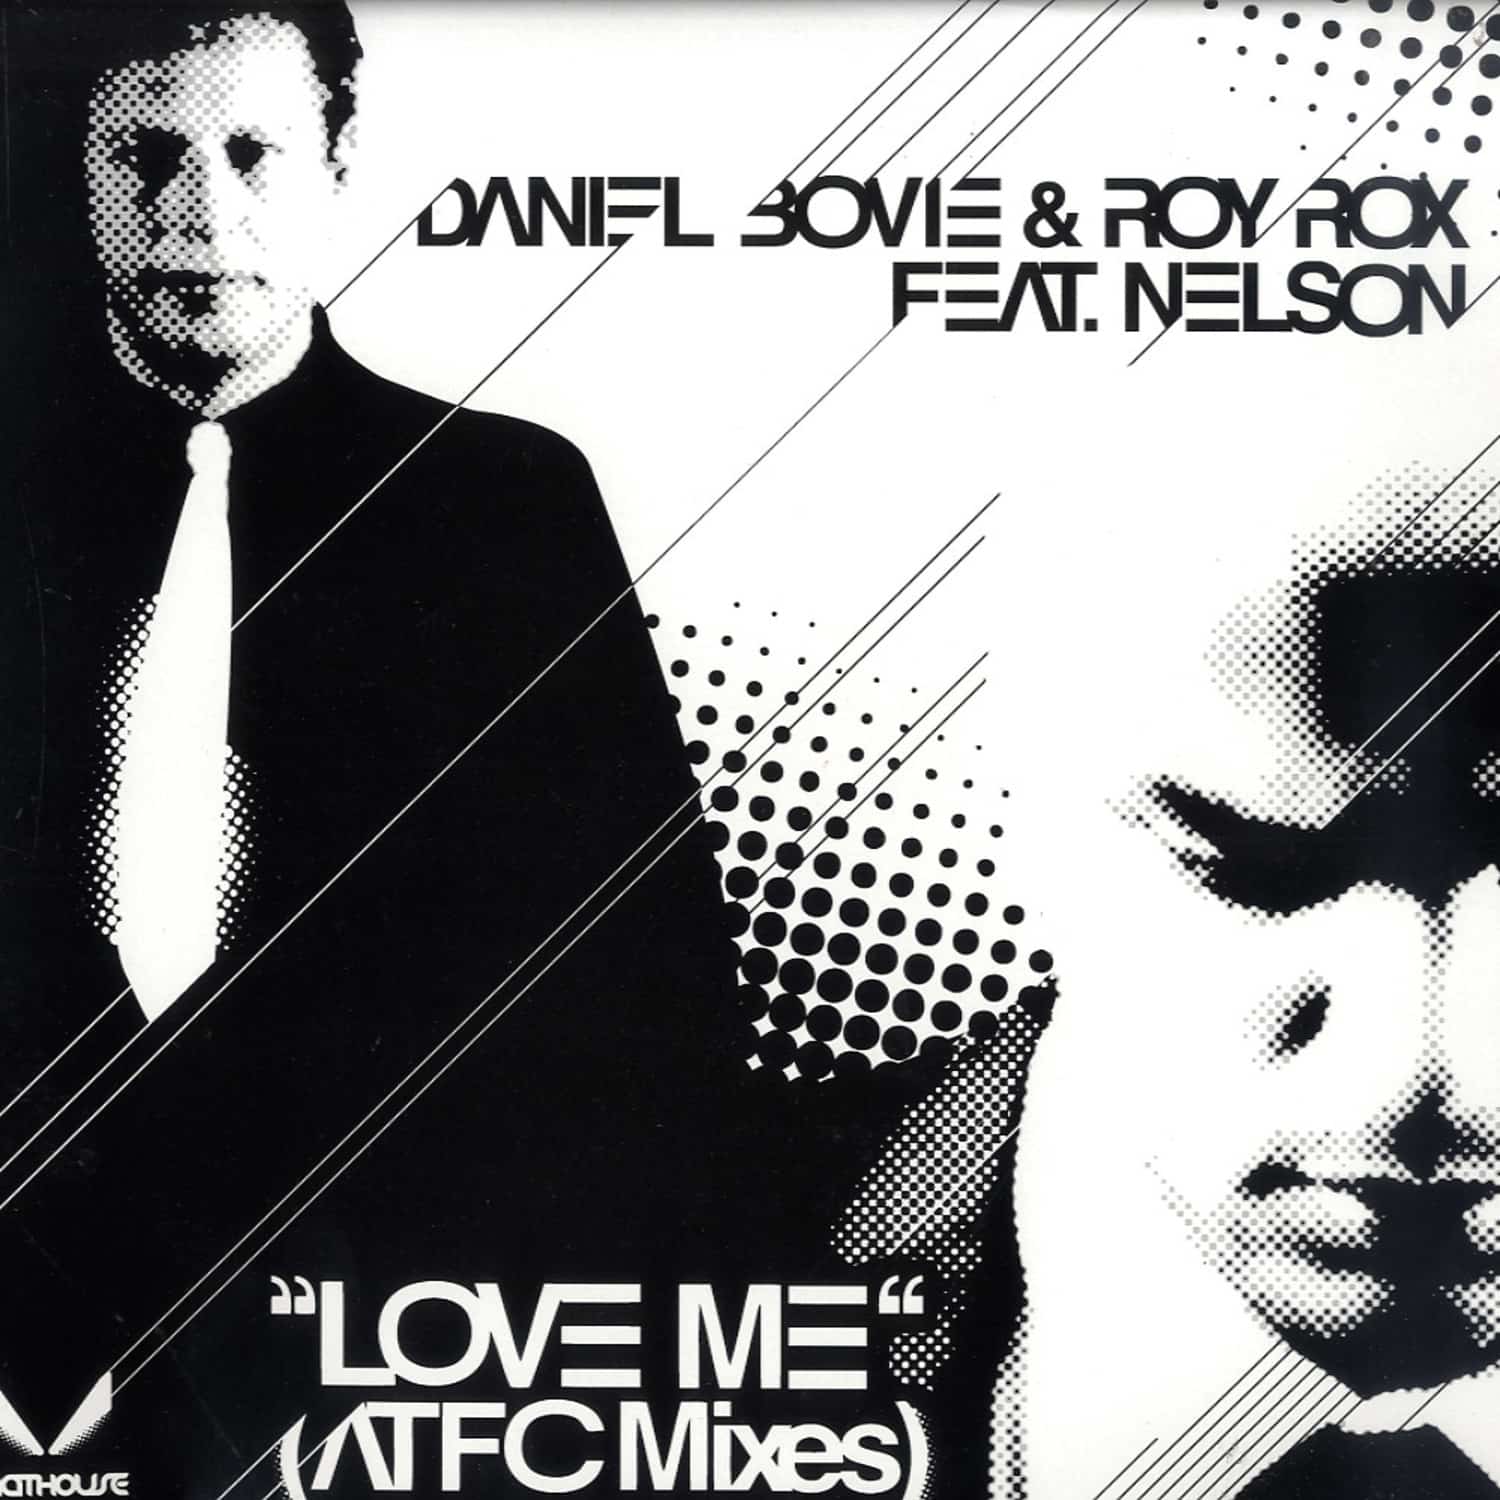 Daniel Bovie & Roy Rox feat. Nelson - LOVE ME 